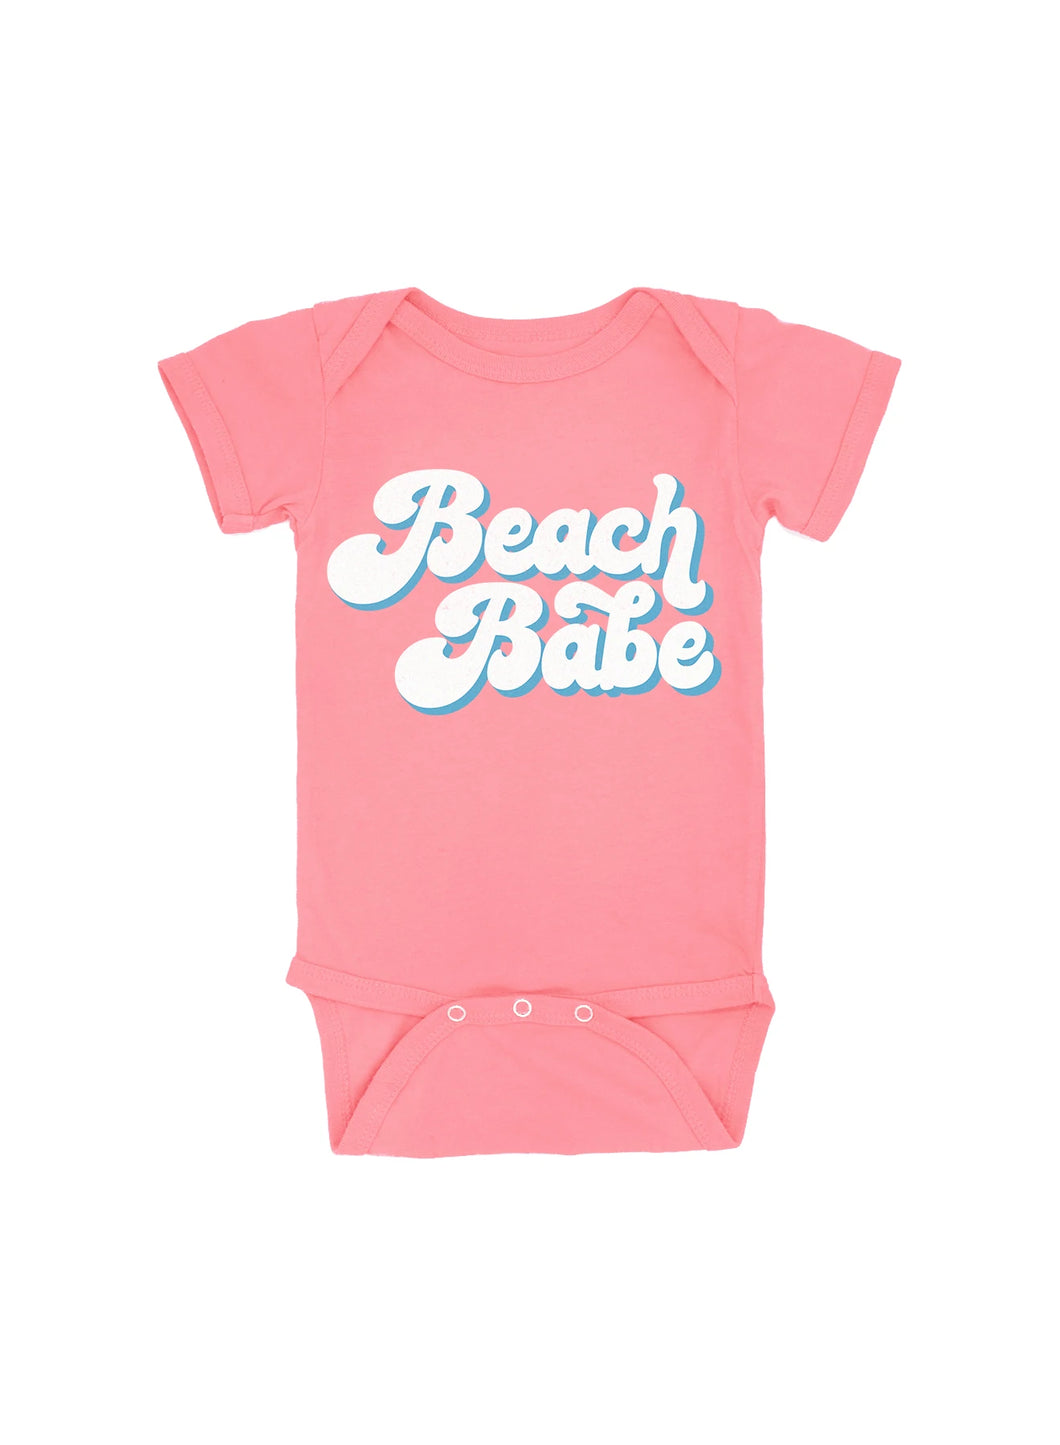 12mos - Beach Babe Onesie